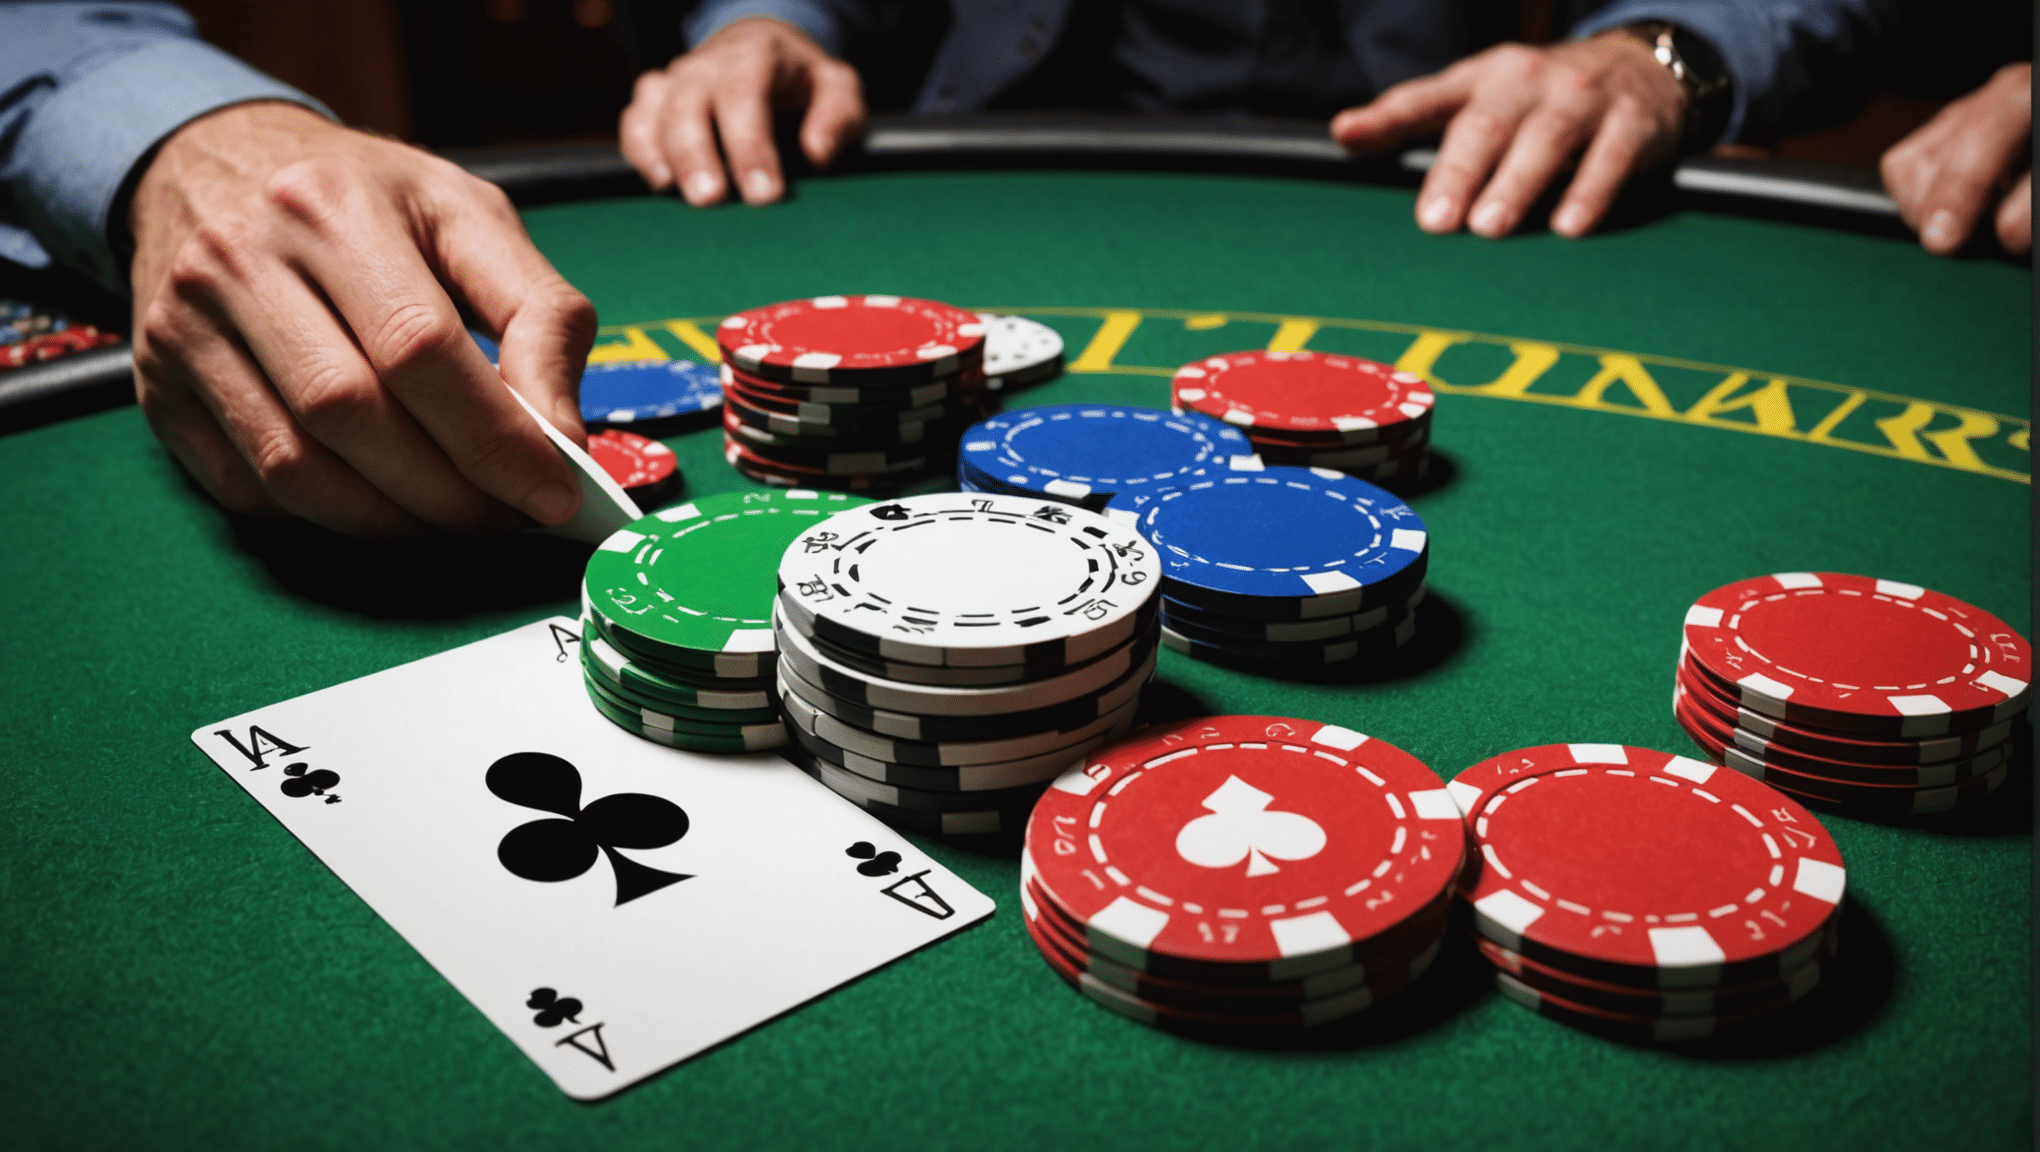 découvrez les stratégies de base au poker et améliorez vos compétences de jeu avec nos règles de poker et conseils stratégiques.